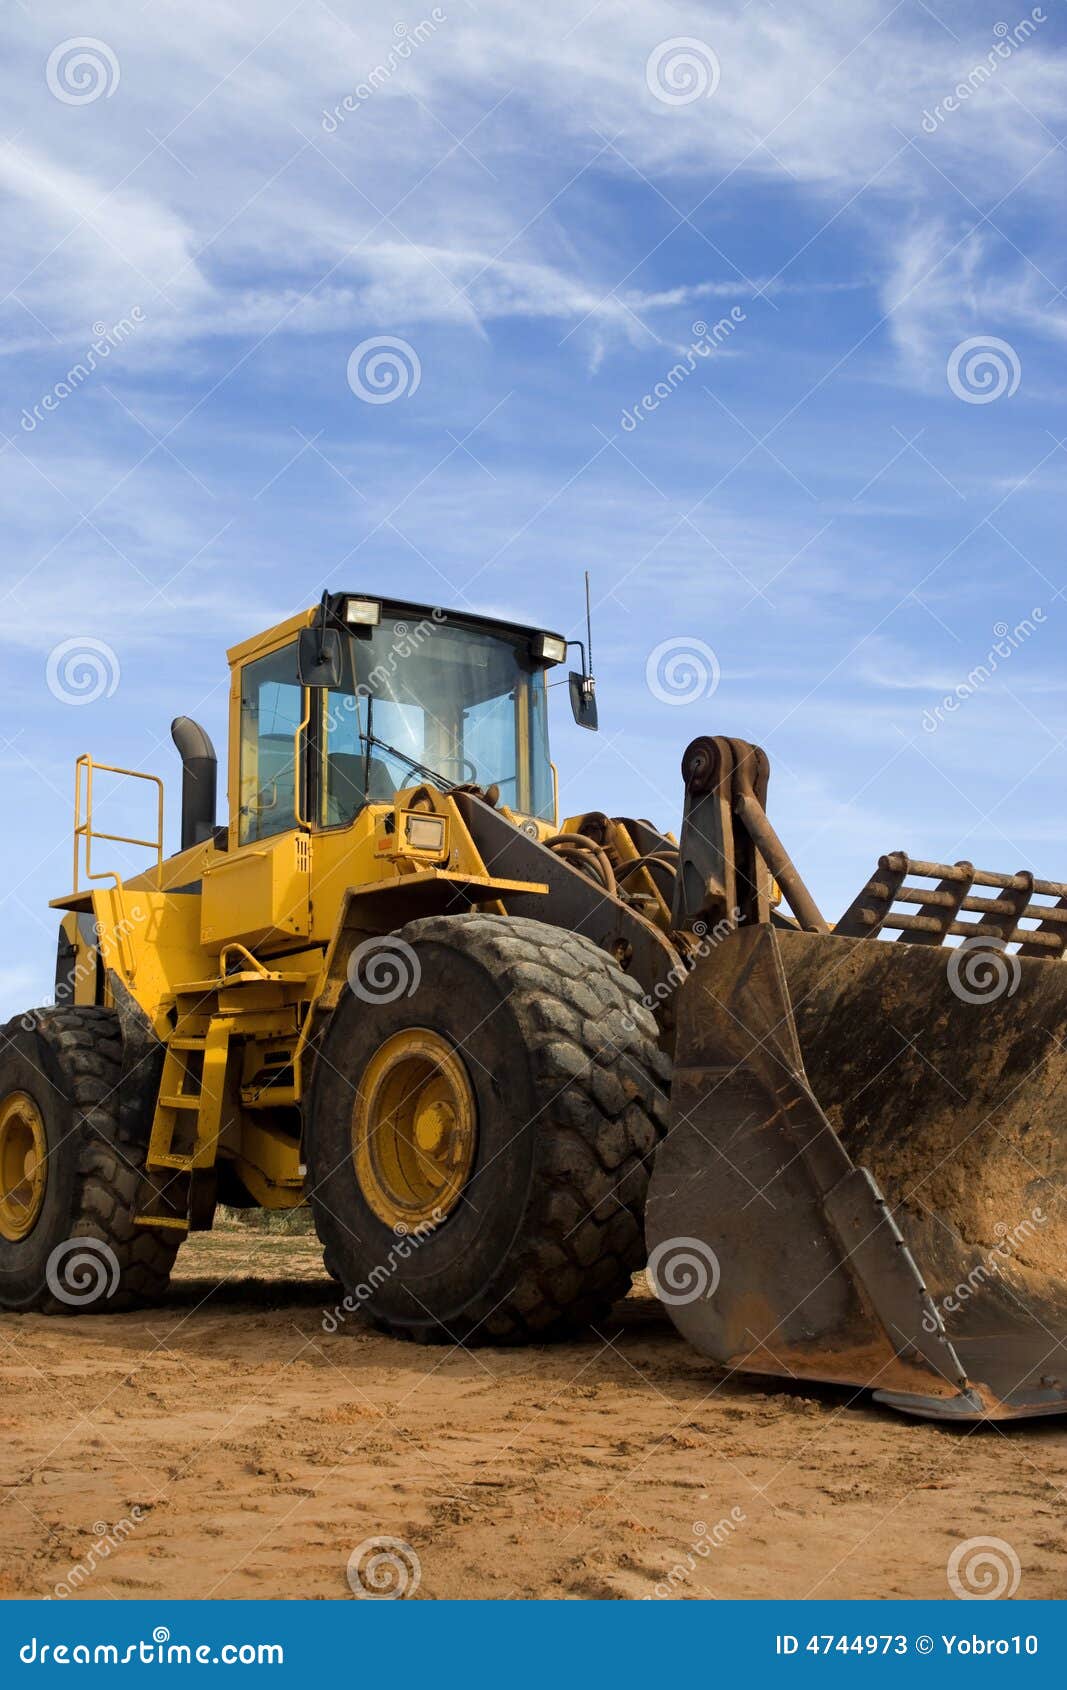 construction bulldozer